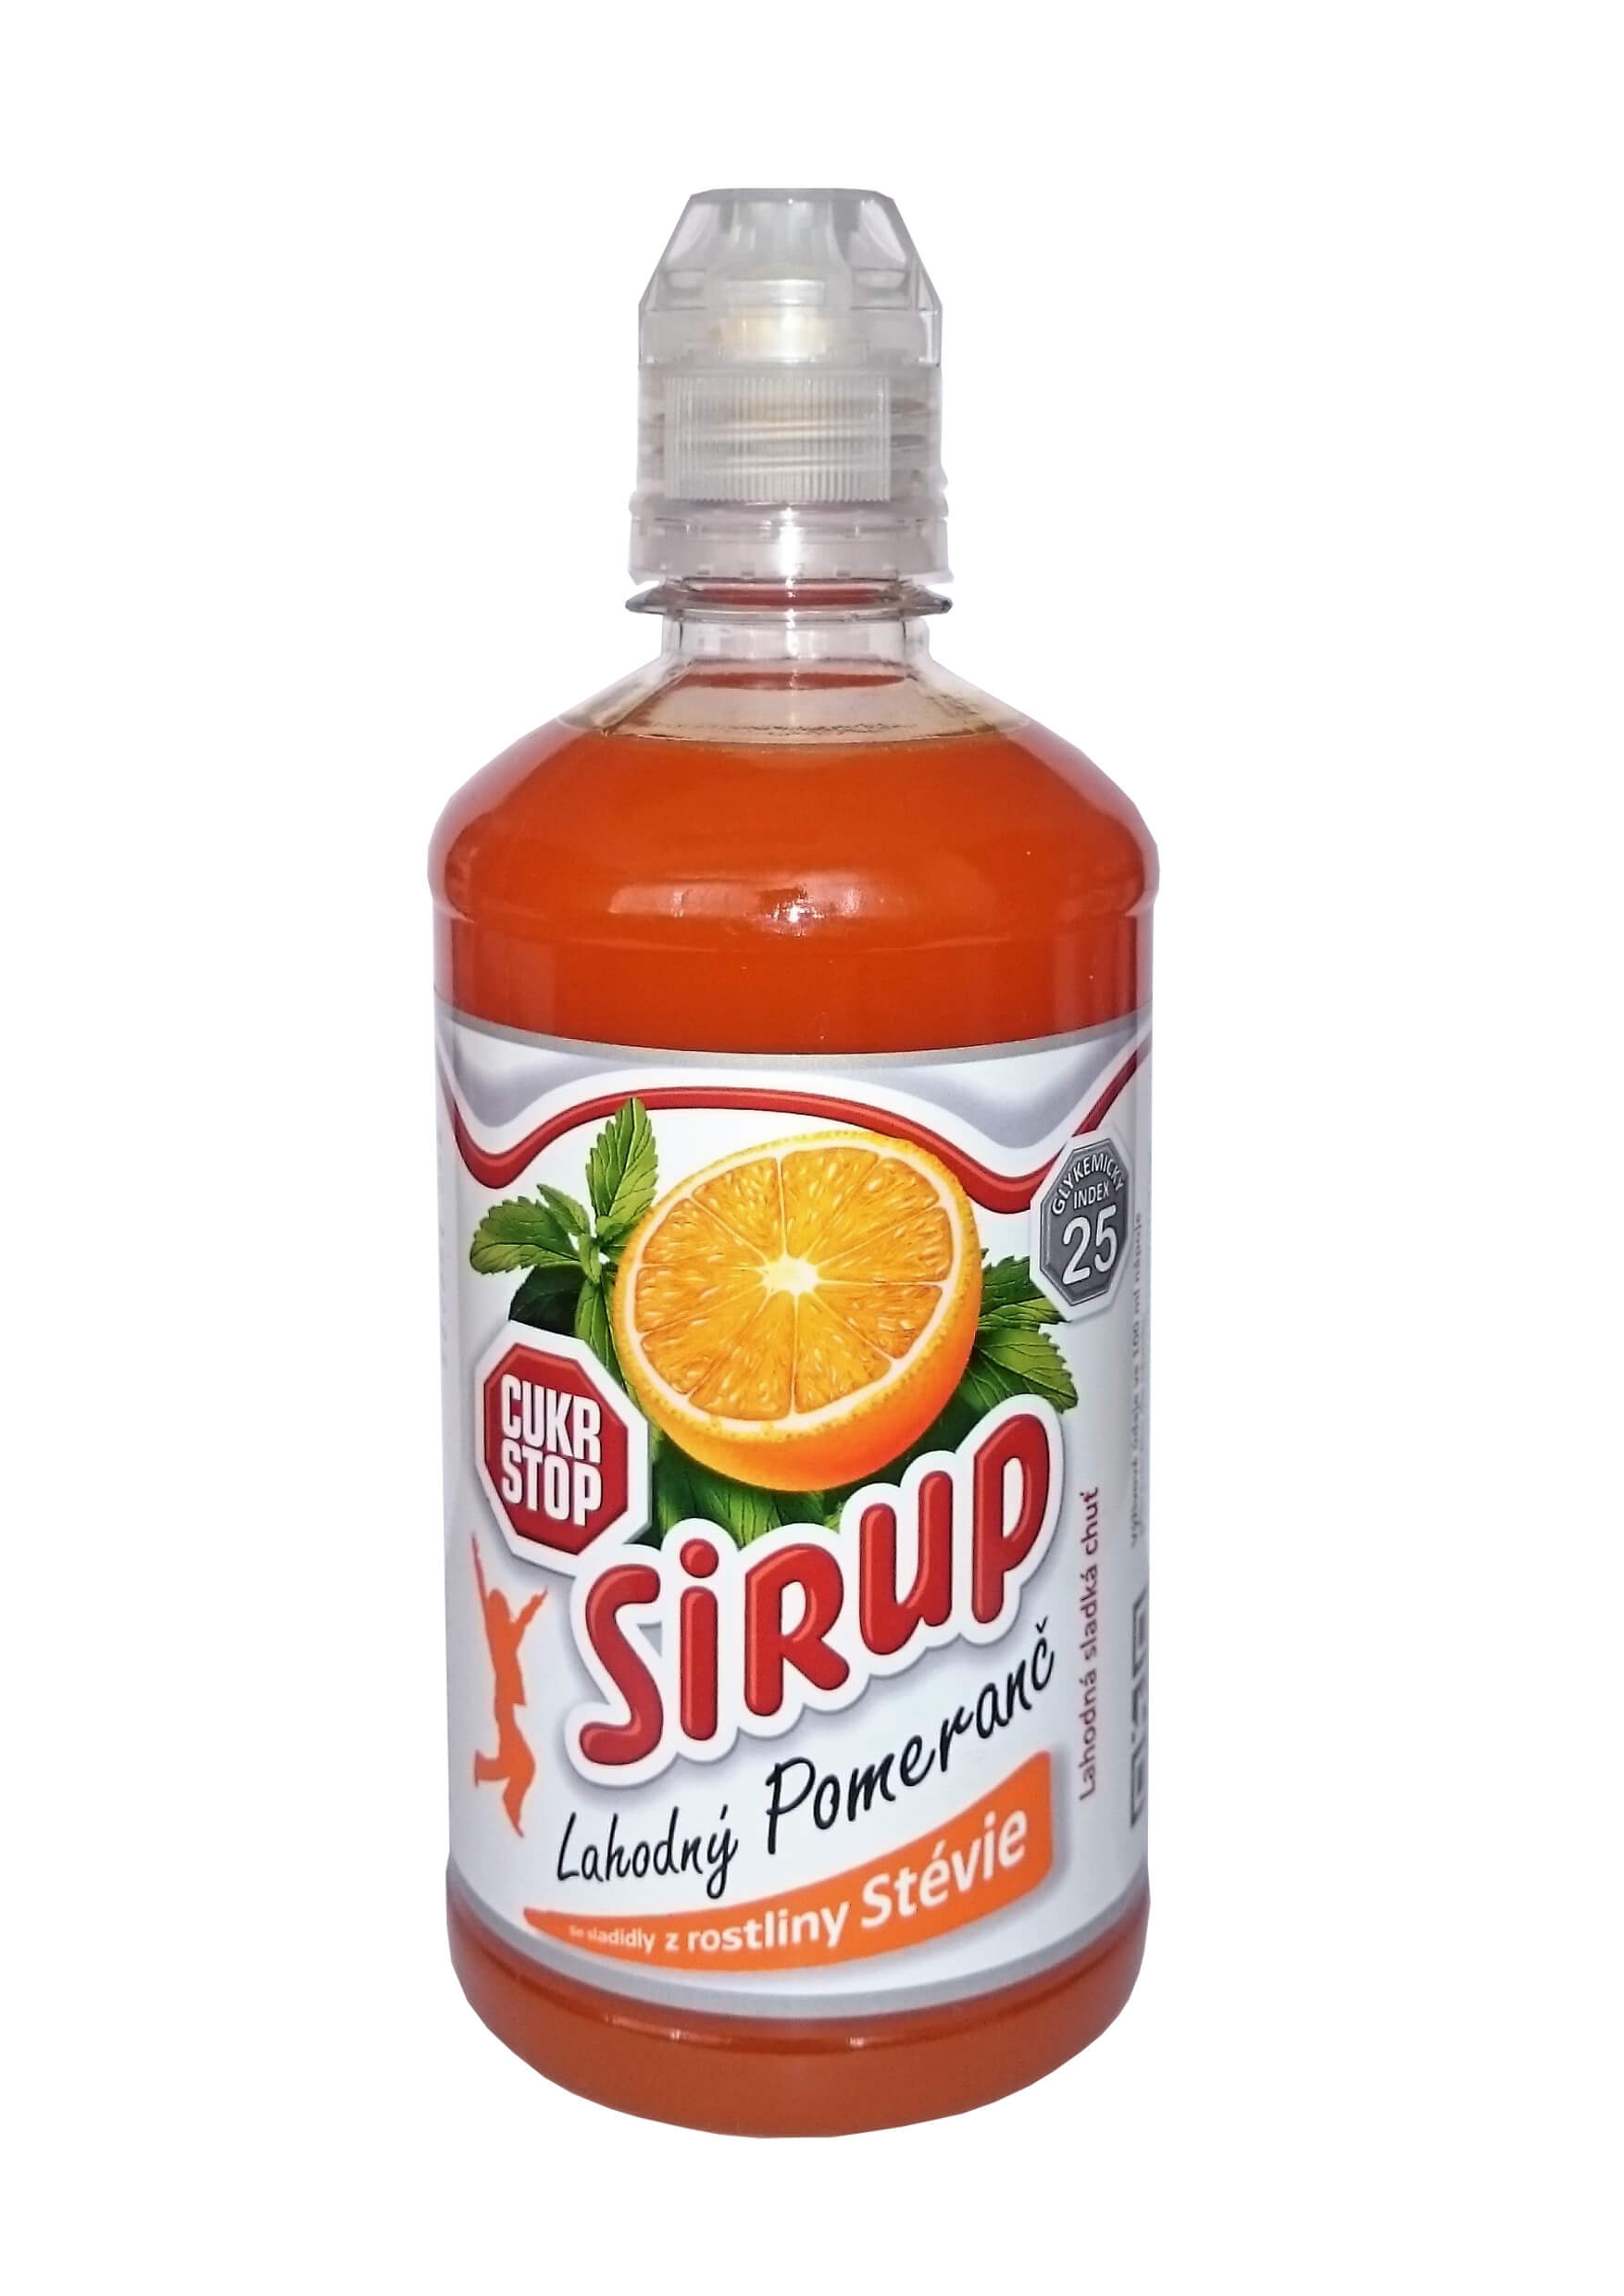 Zobrazit detail výrobku CukrStop Sirup se sladidly z rostliny stévie - lahodný pomeranč 650 g + 2 měsíce na vrácení zboží